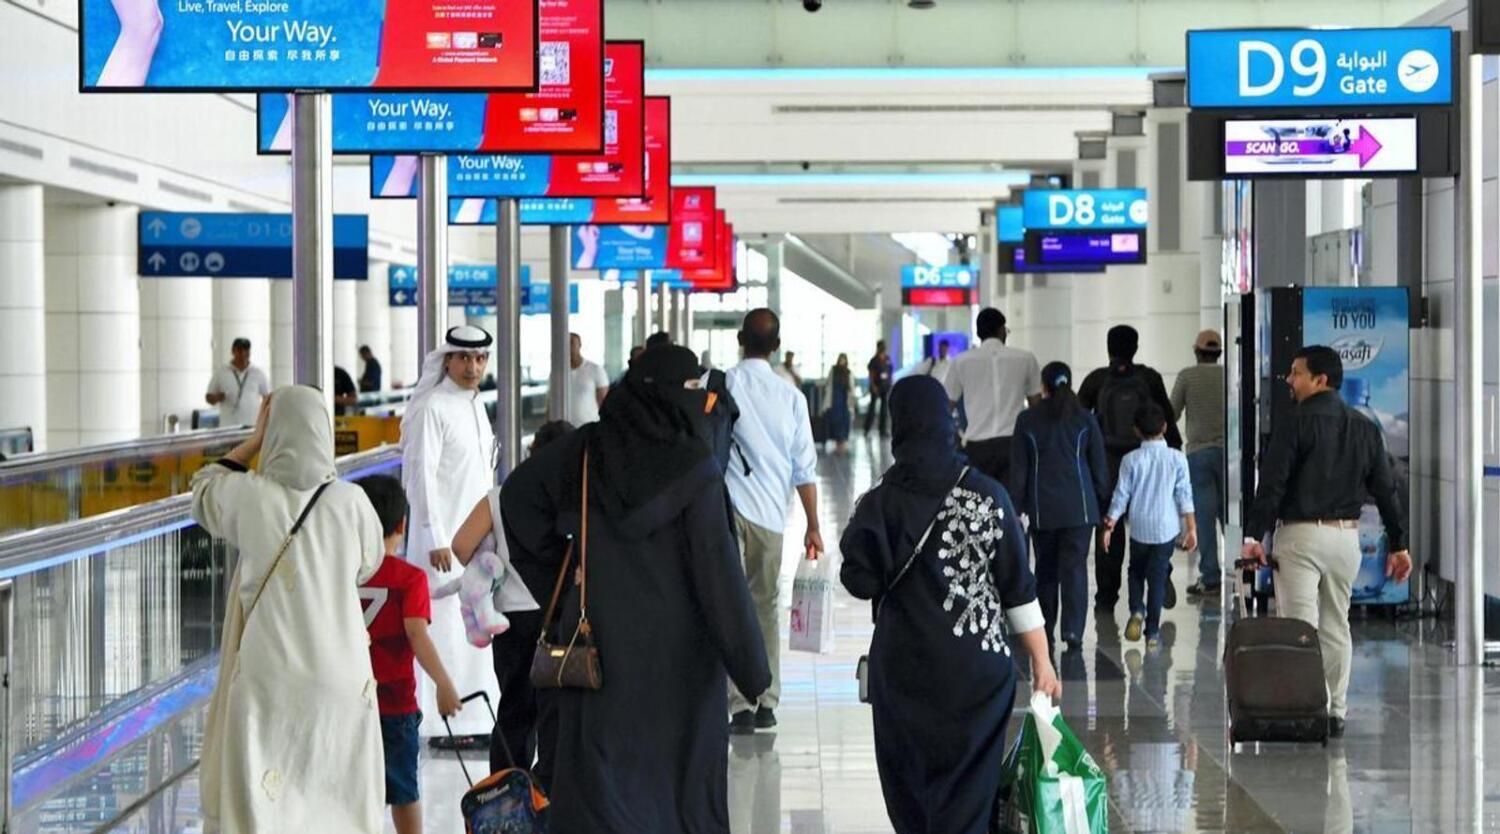 UAE doctors advise public to use surgical masks, avoid cloth masks